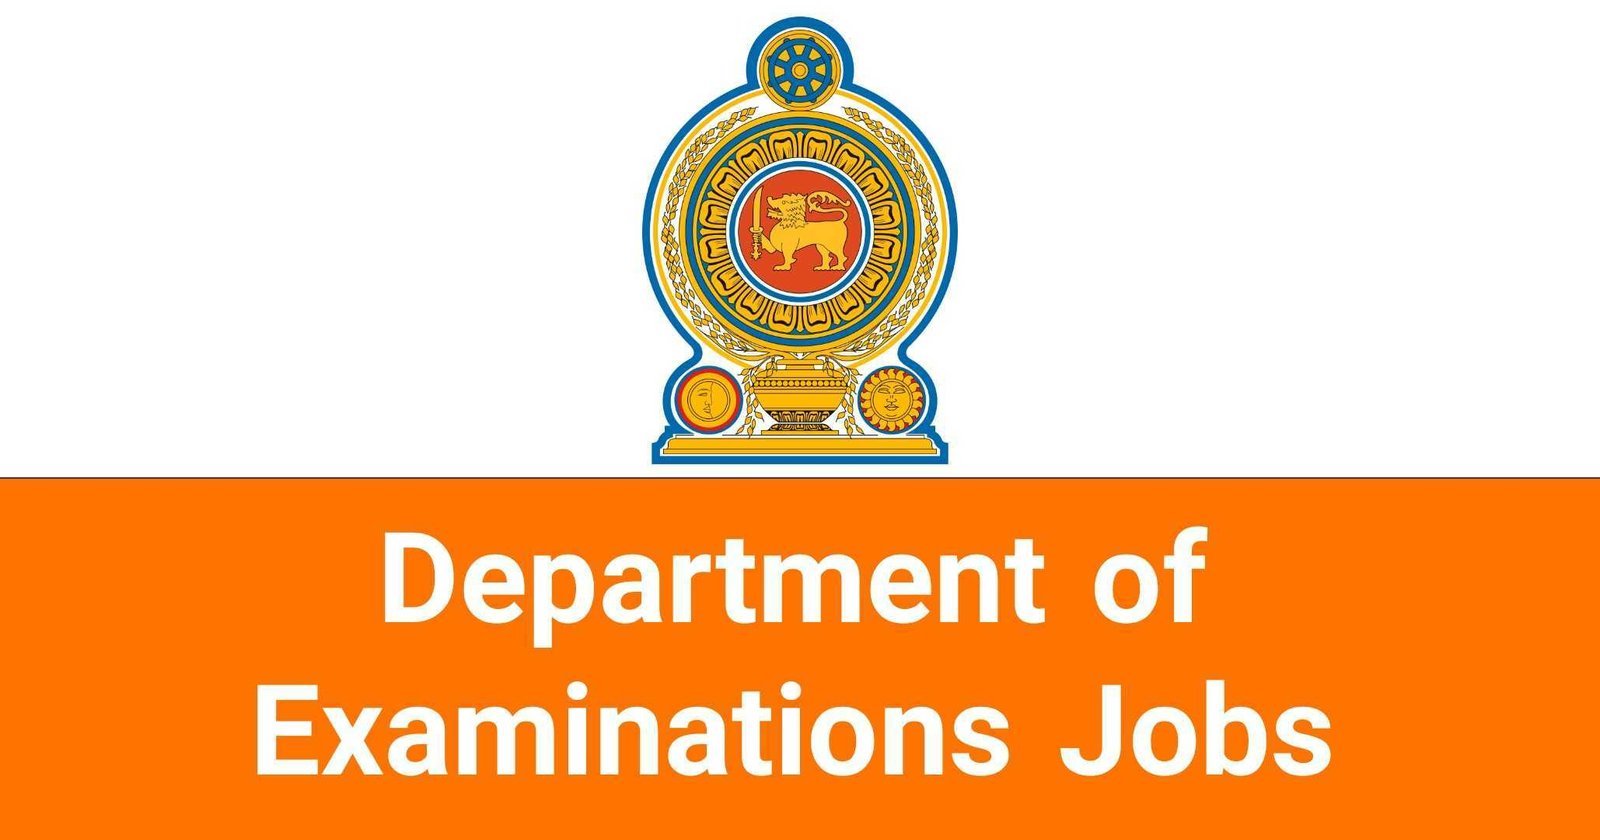 Department of Examinations Jobs Vacancies Careers